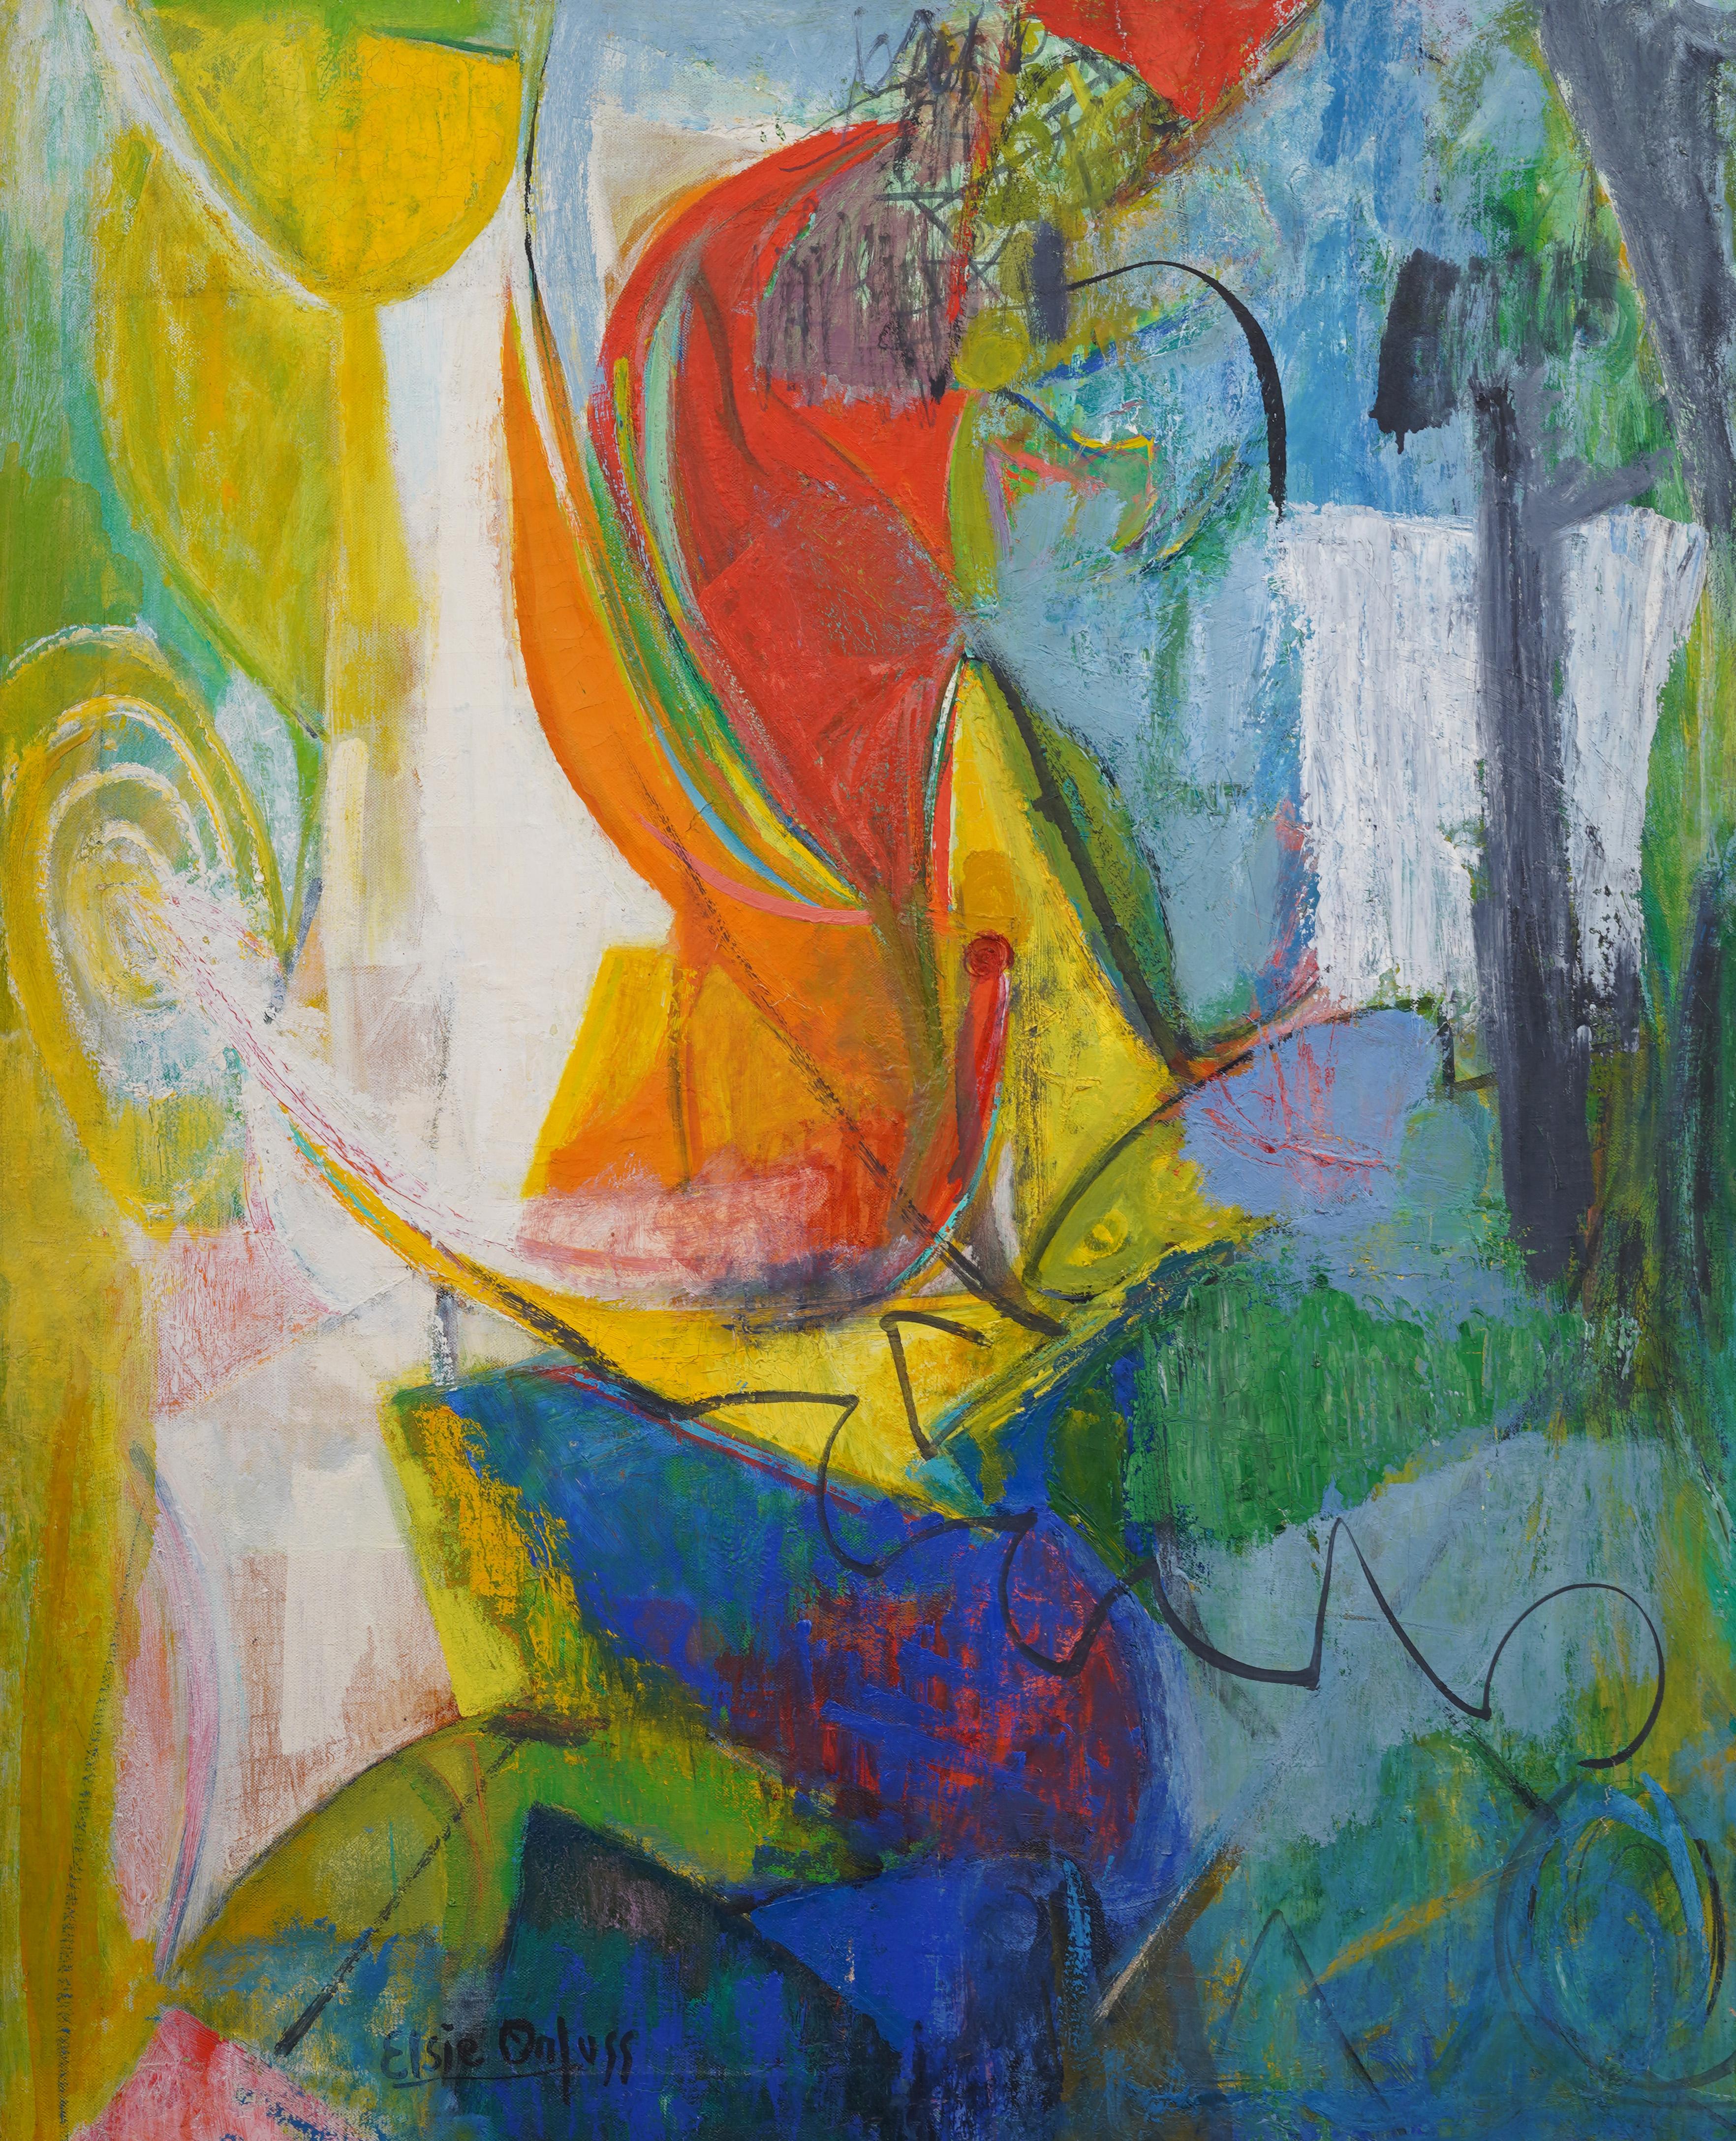 Antikes Ölgemälde der amerikanischen Schule, weibliche Künstlerin des Abstrakten Expressionismus, kubistisches Ölgemälde (Abstrakter Expressionismus), Painting, von elsie orfuss